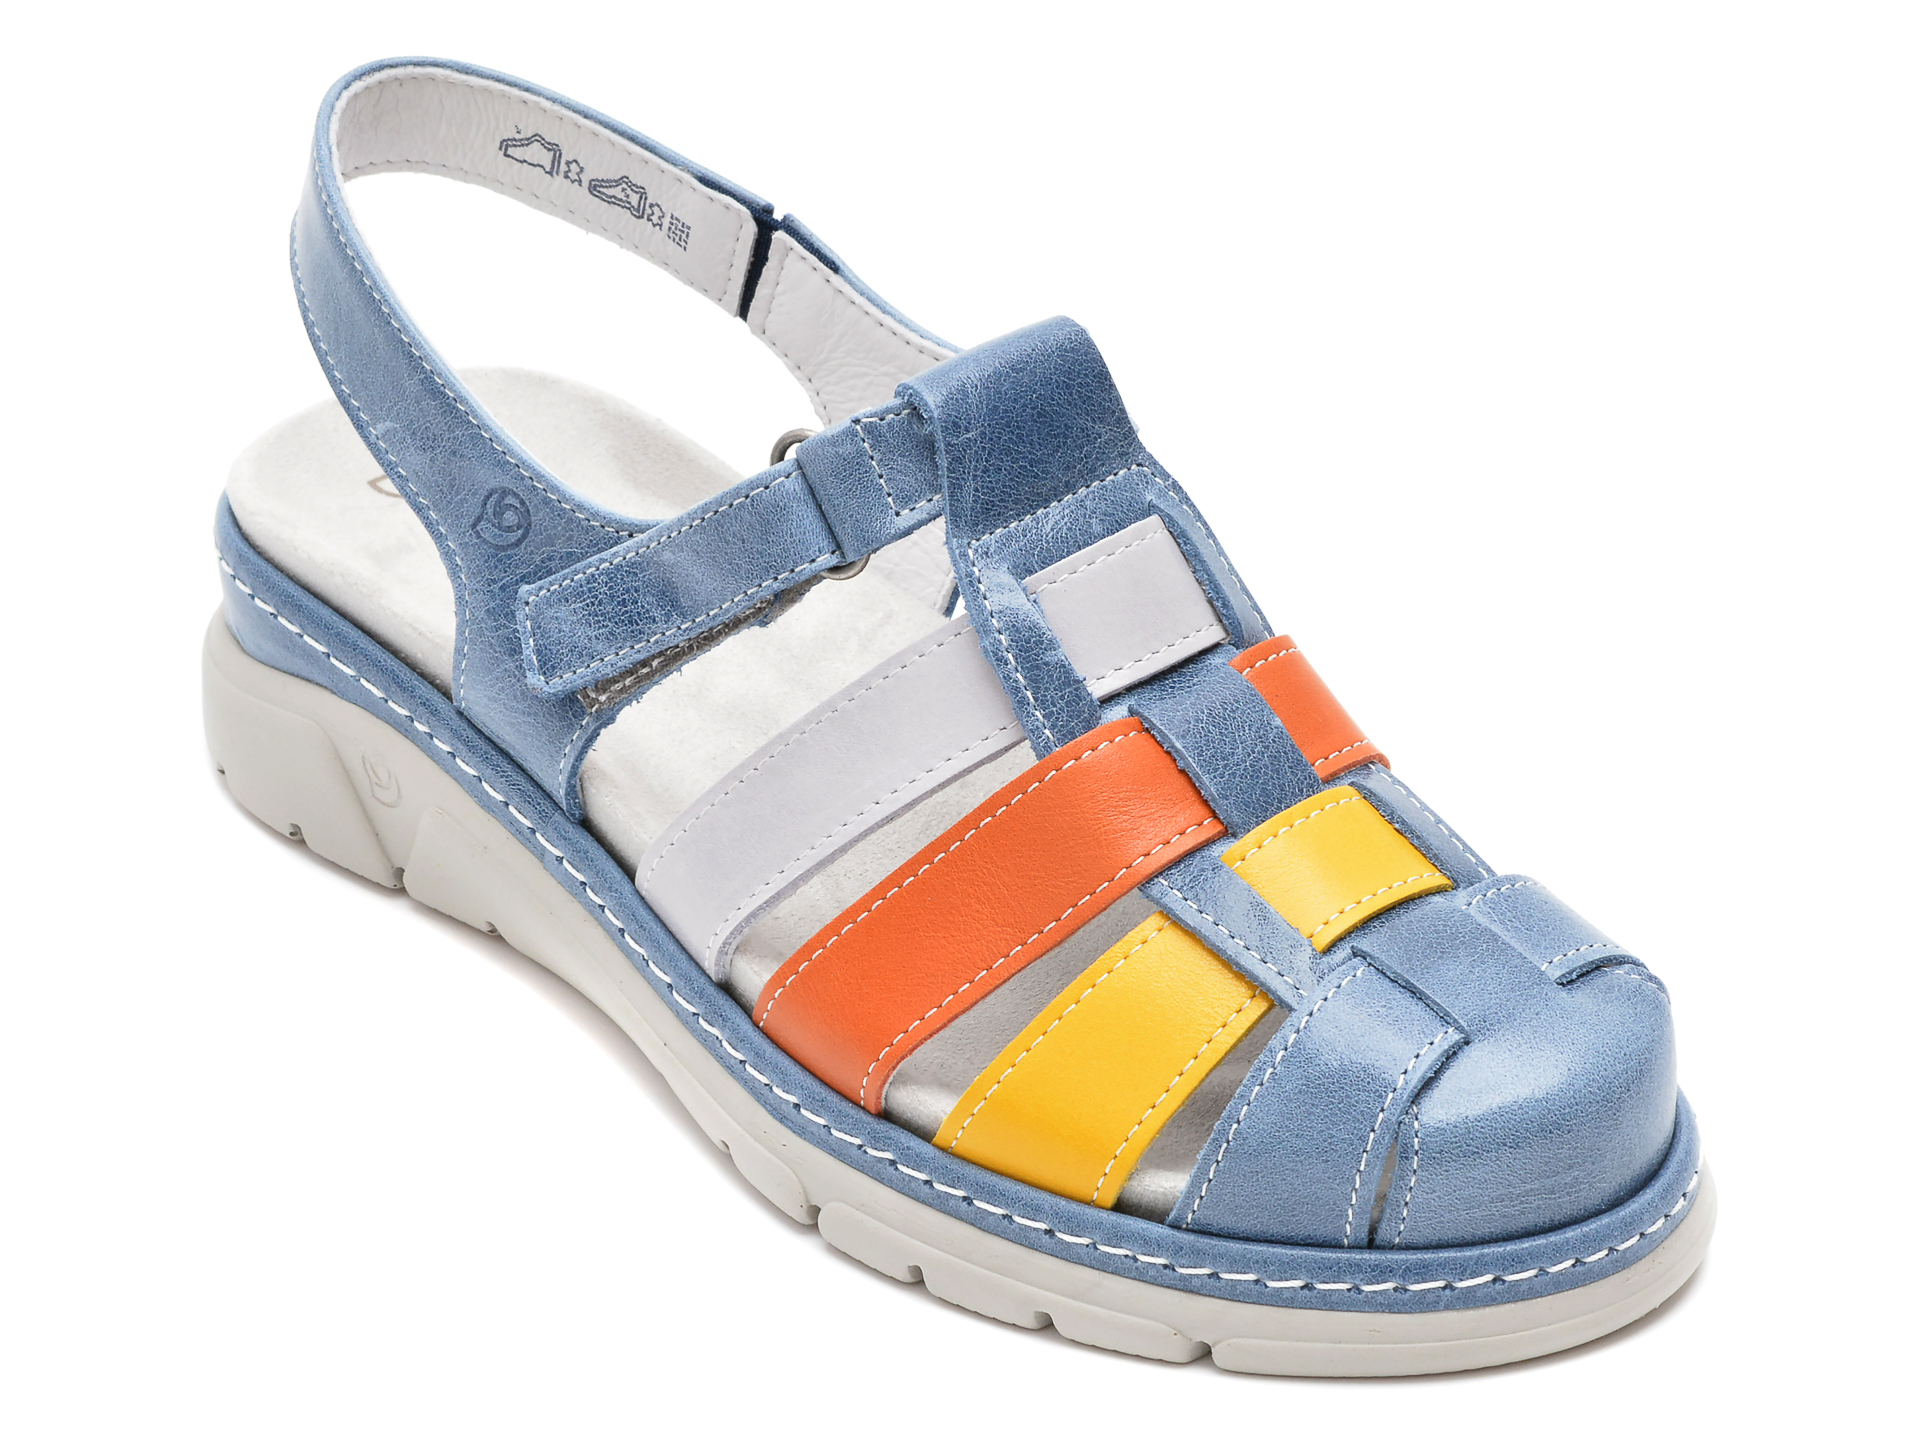 Sandale SUAVE albastre, 12519, din piele naturala 2022 ❤️ Pret Super tezyo.ro imagine noua 2022